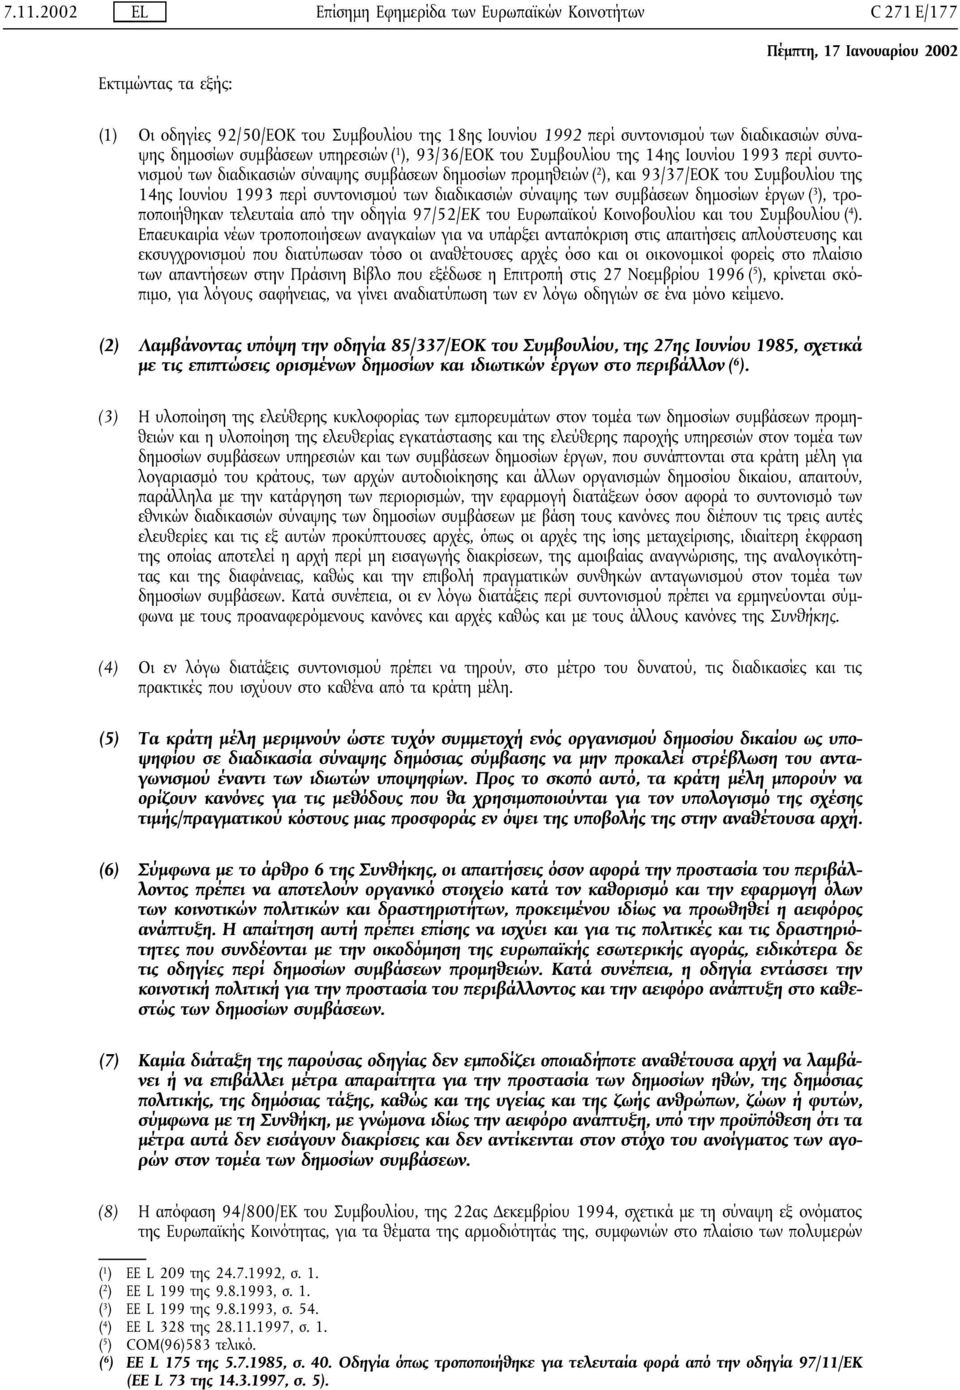 Ιουνίου 1993 περί συντονισµού των διαδικασιών σύναψης των συµβάσεων δηµοσίων έργων ( 3 ), τροποποιήθηκαν τελευταία από την οδηγία 97/52/ΕΚ του Ευρωπαϊκού Κοινοβουλίου και του Συµβουλίου ( 4 ).